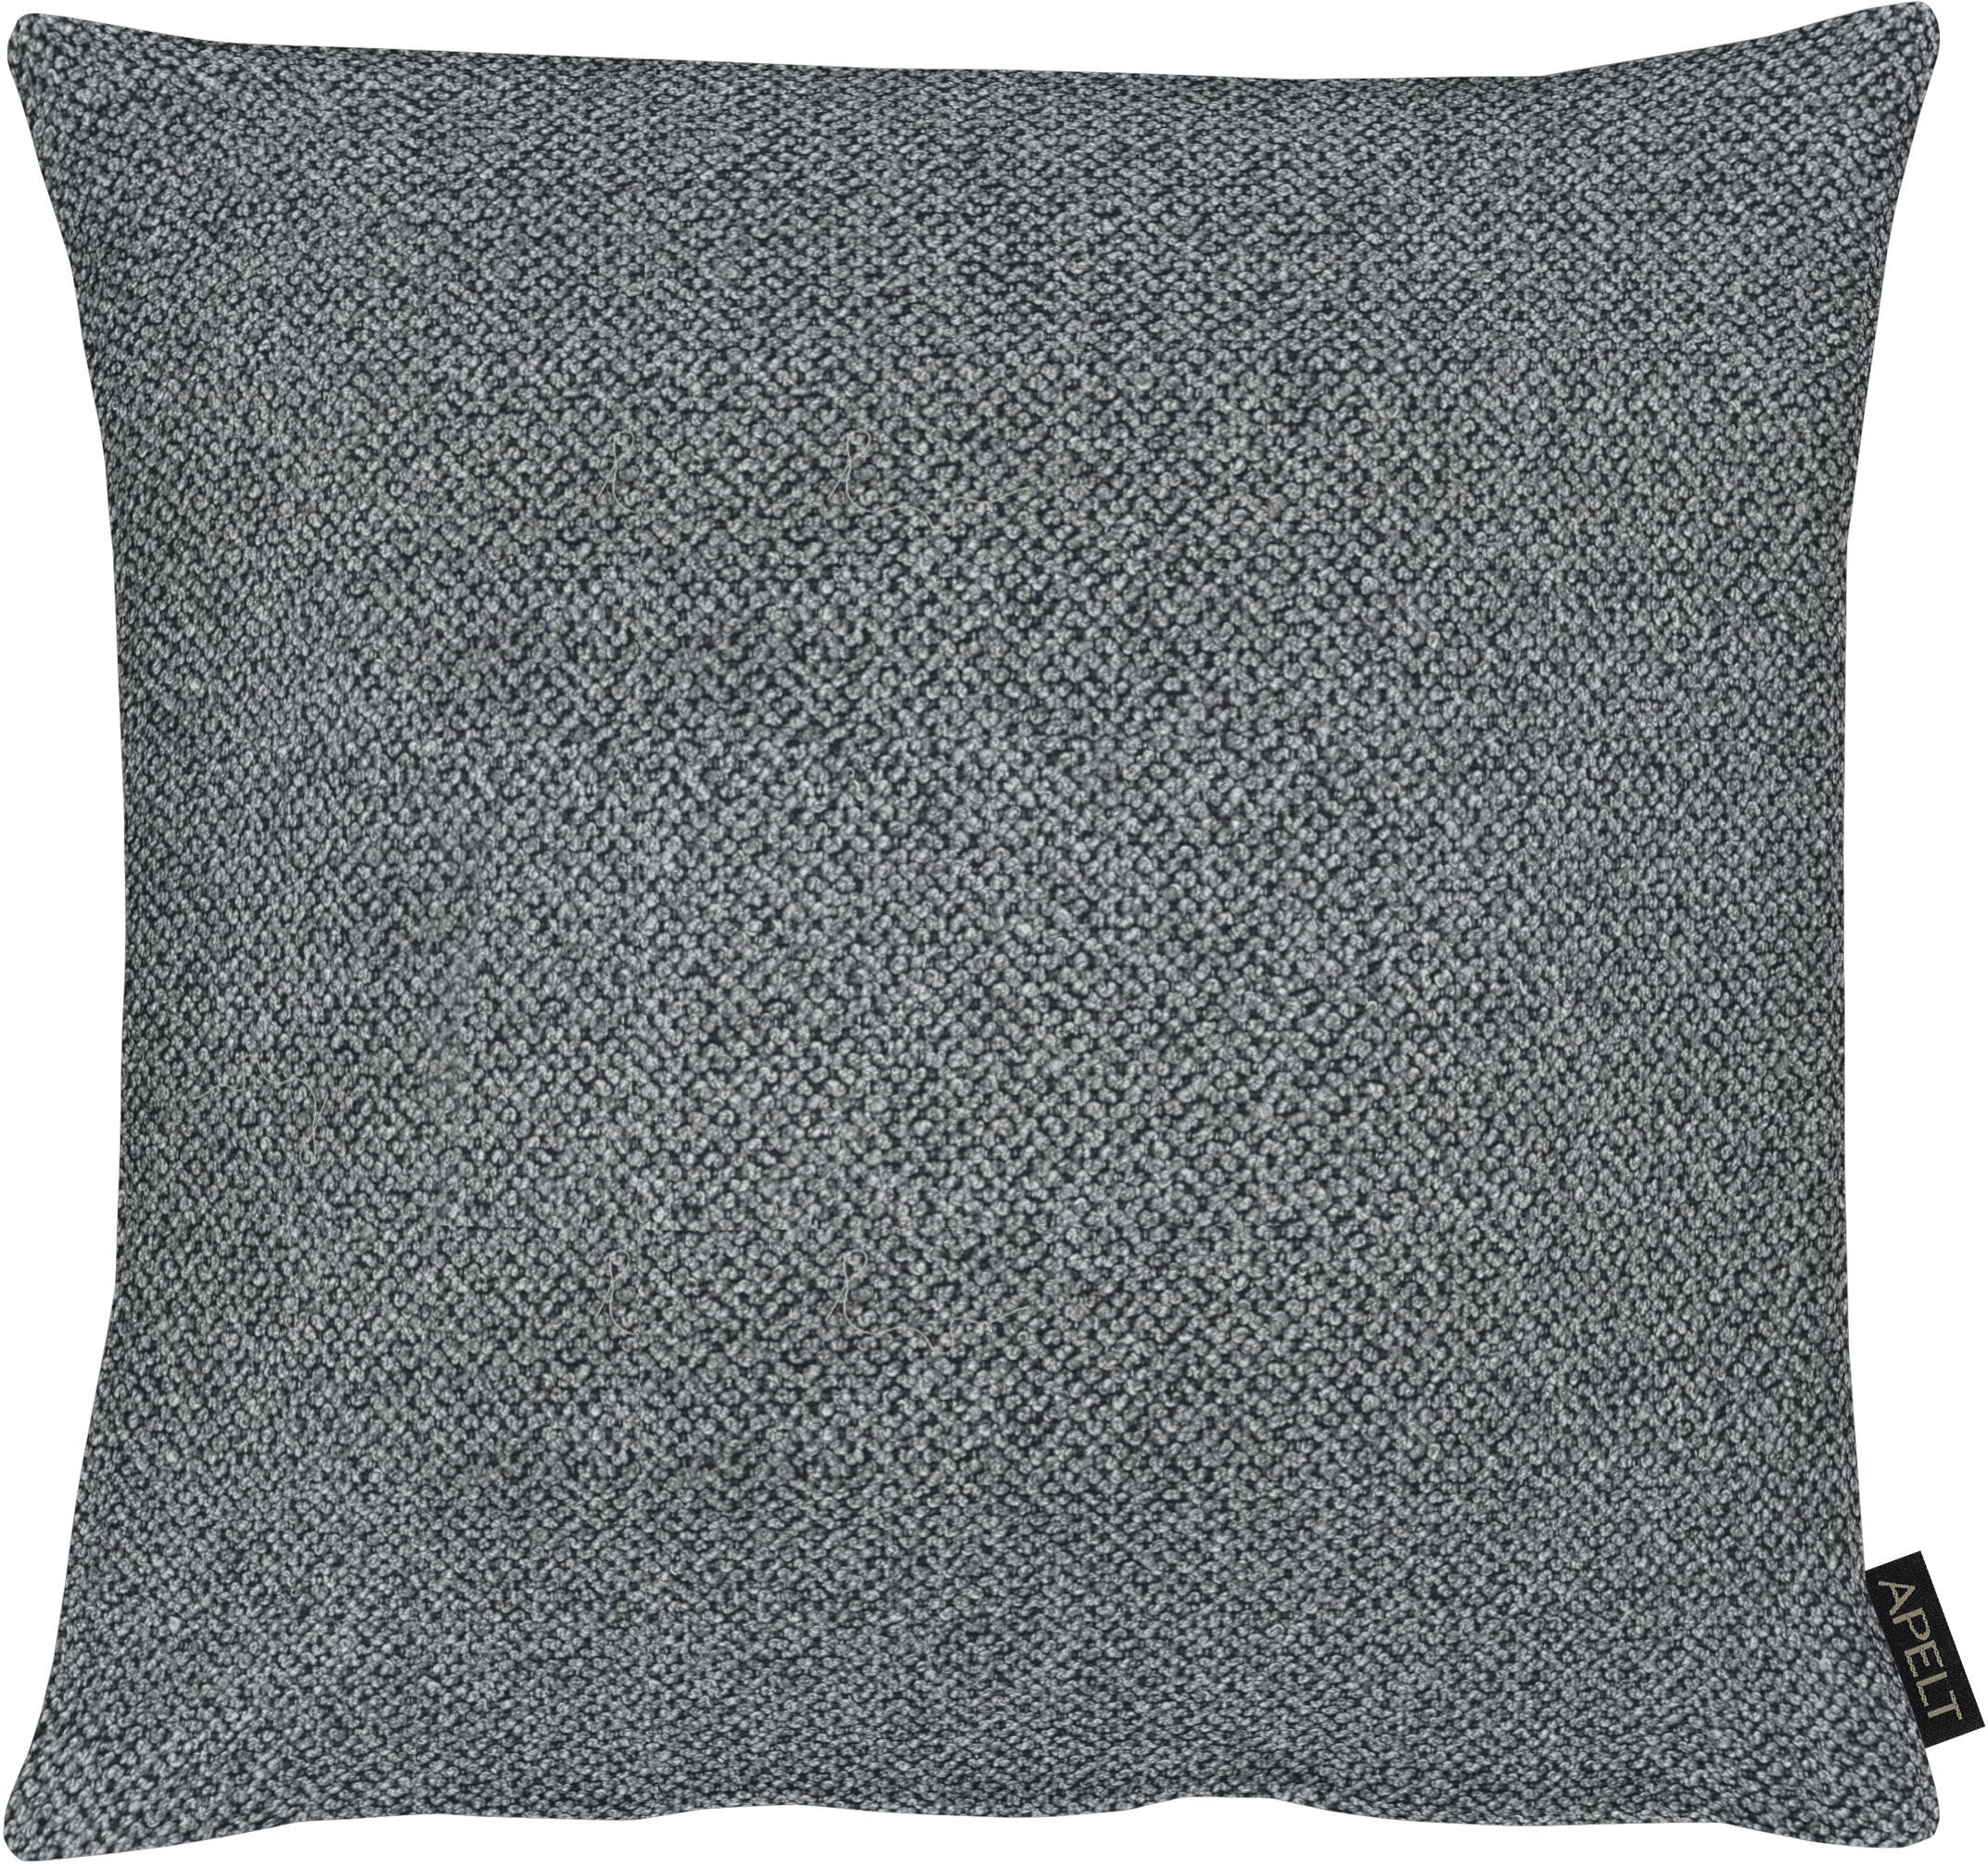 Star Home Textil Dekokissen »Nutria«, (1 St.), aus besonders weichem  Fellimitat günstig kaufen